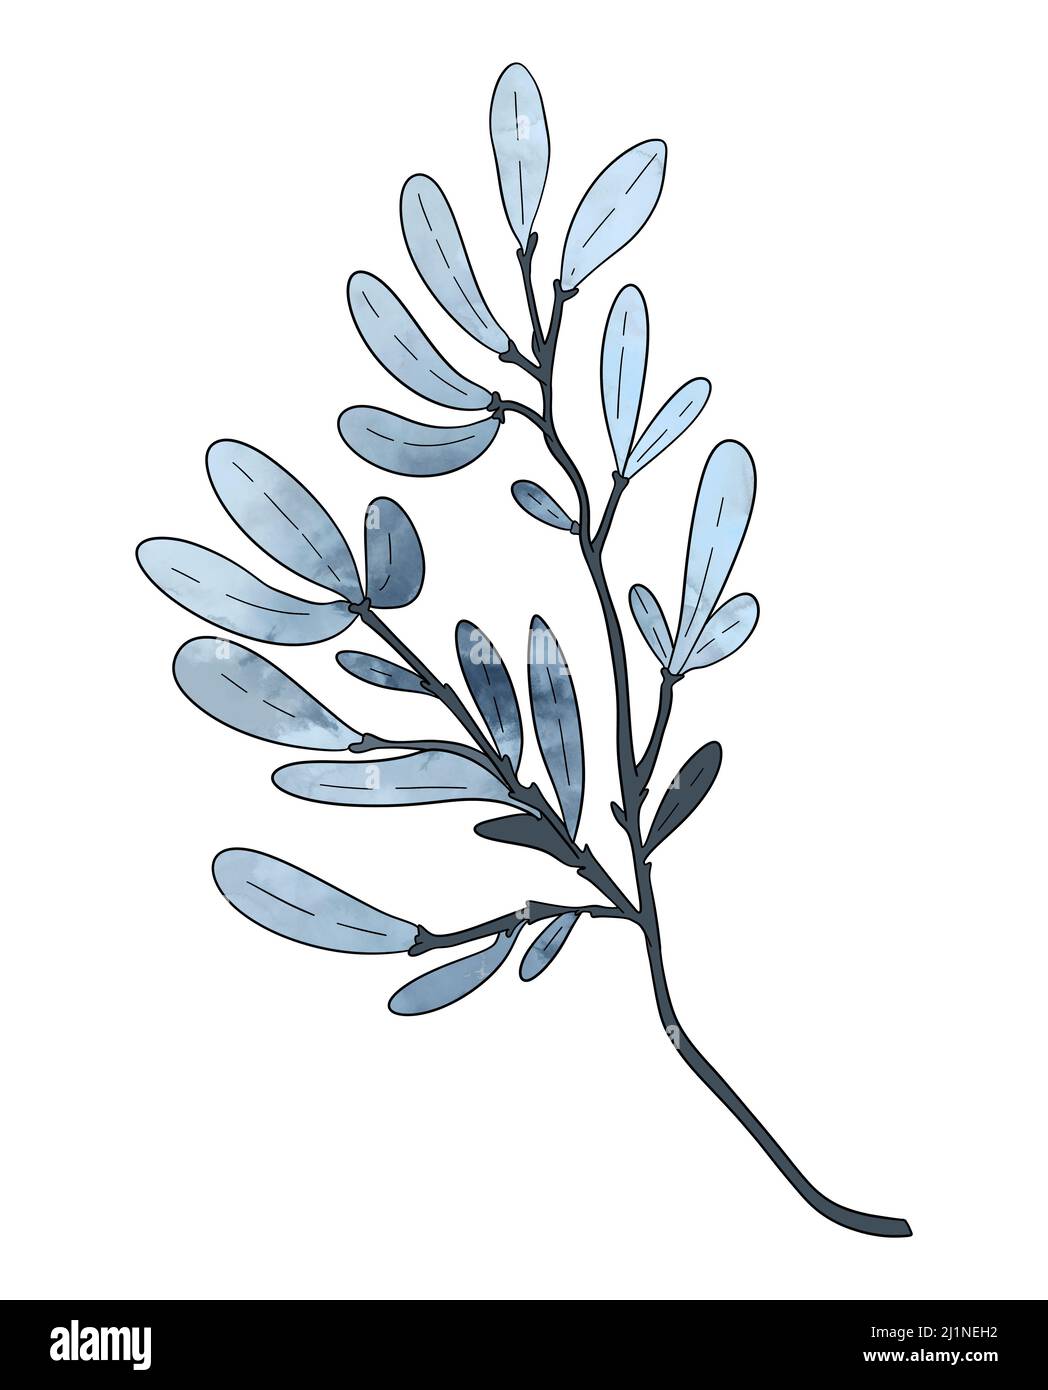 La branche laisse le bleu écologique dans le style aquarelle sur fond blanc. Laisse sur une branche pour décorer le design. Illustration de haute qualité Banque D'Images